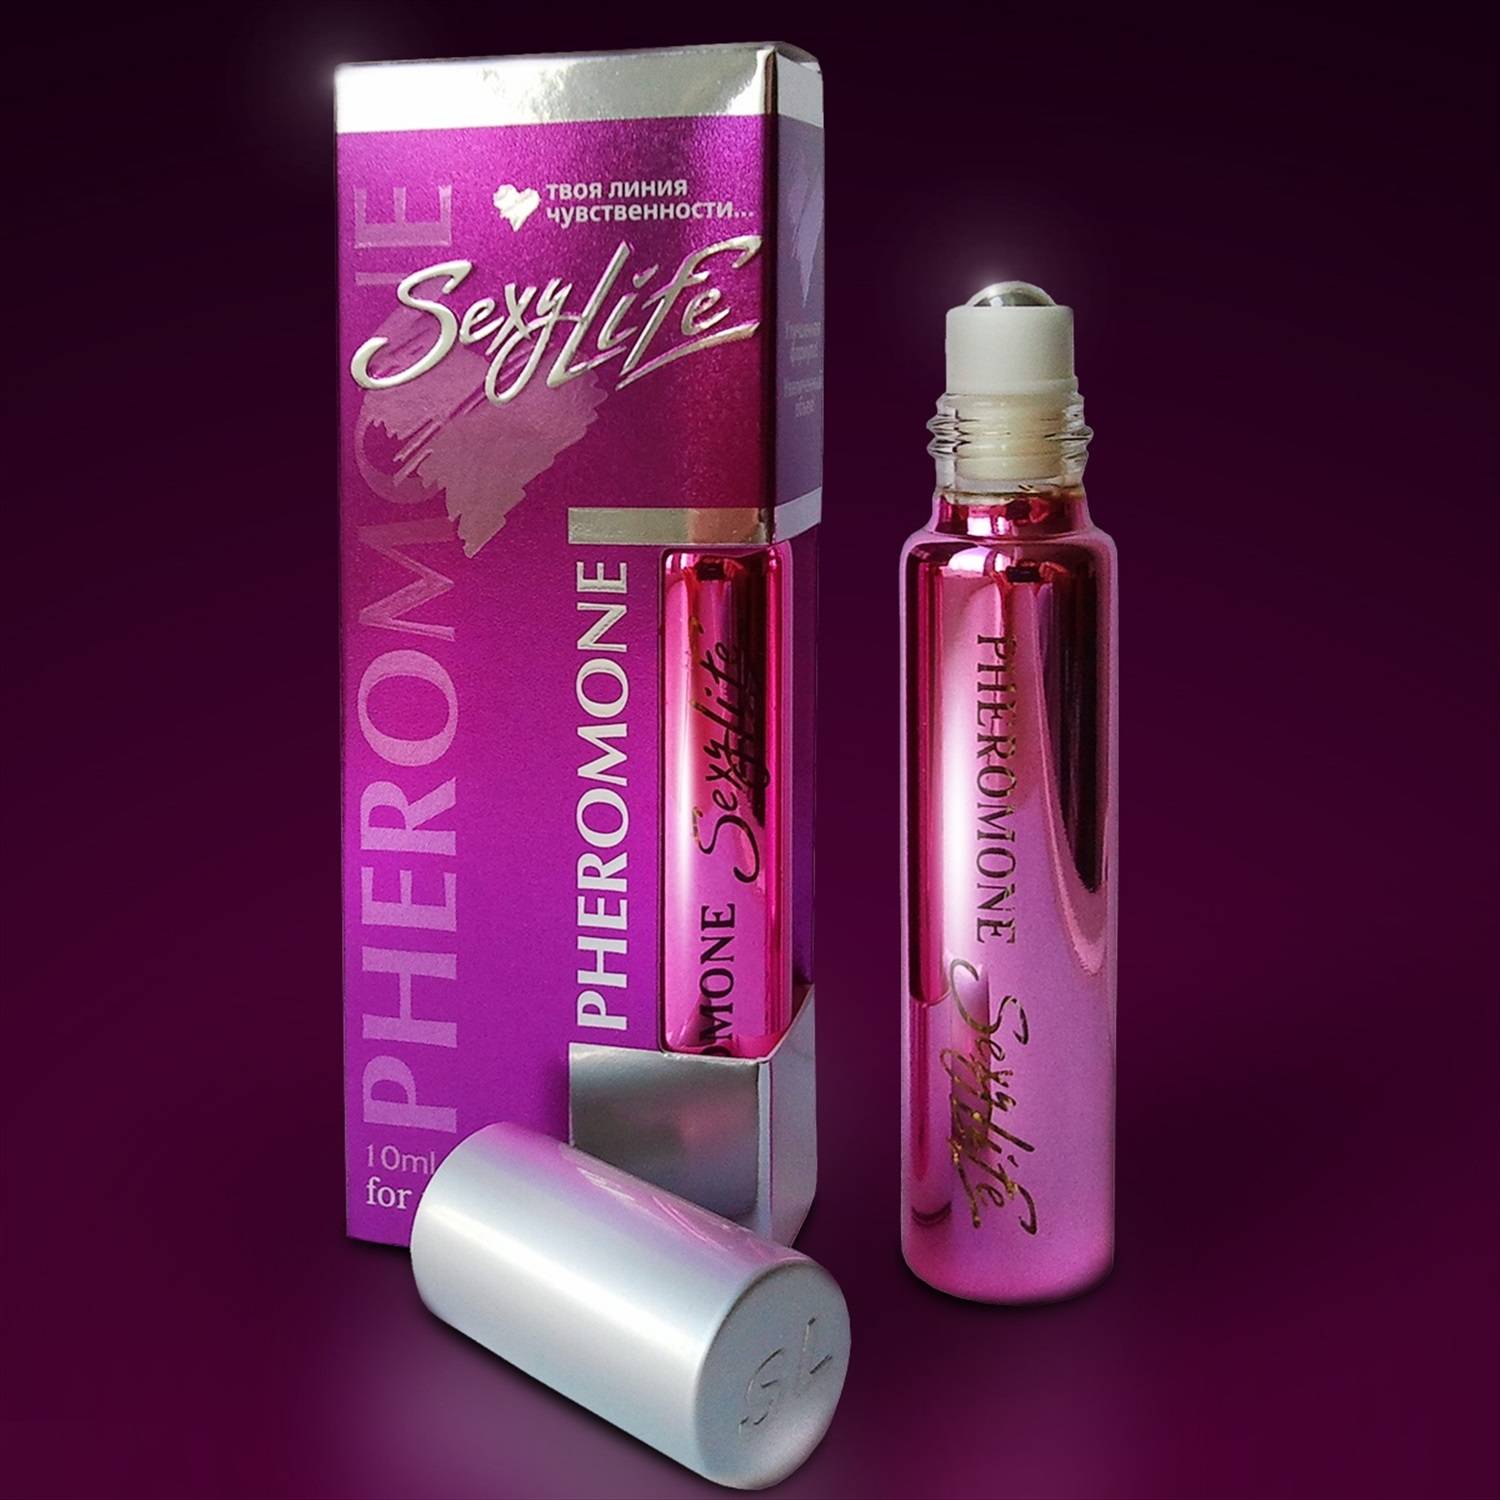 Духи с афродизиаками для женщин и мужчин: лучшие сильные ароматы в парфюмерии, привлекающие запахи в парфюме известных брендов, отзывы на aromacode